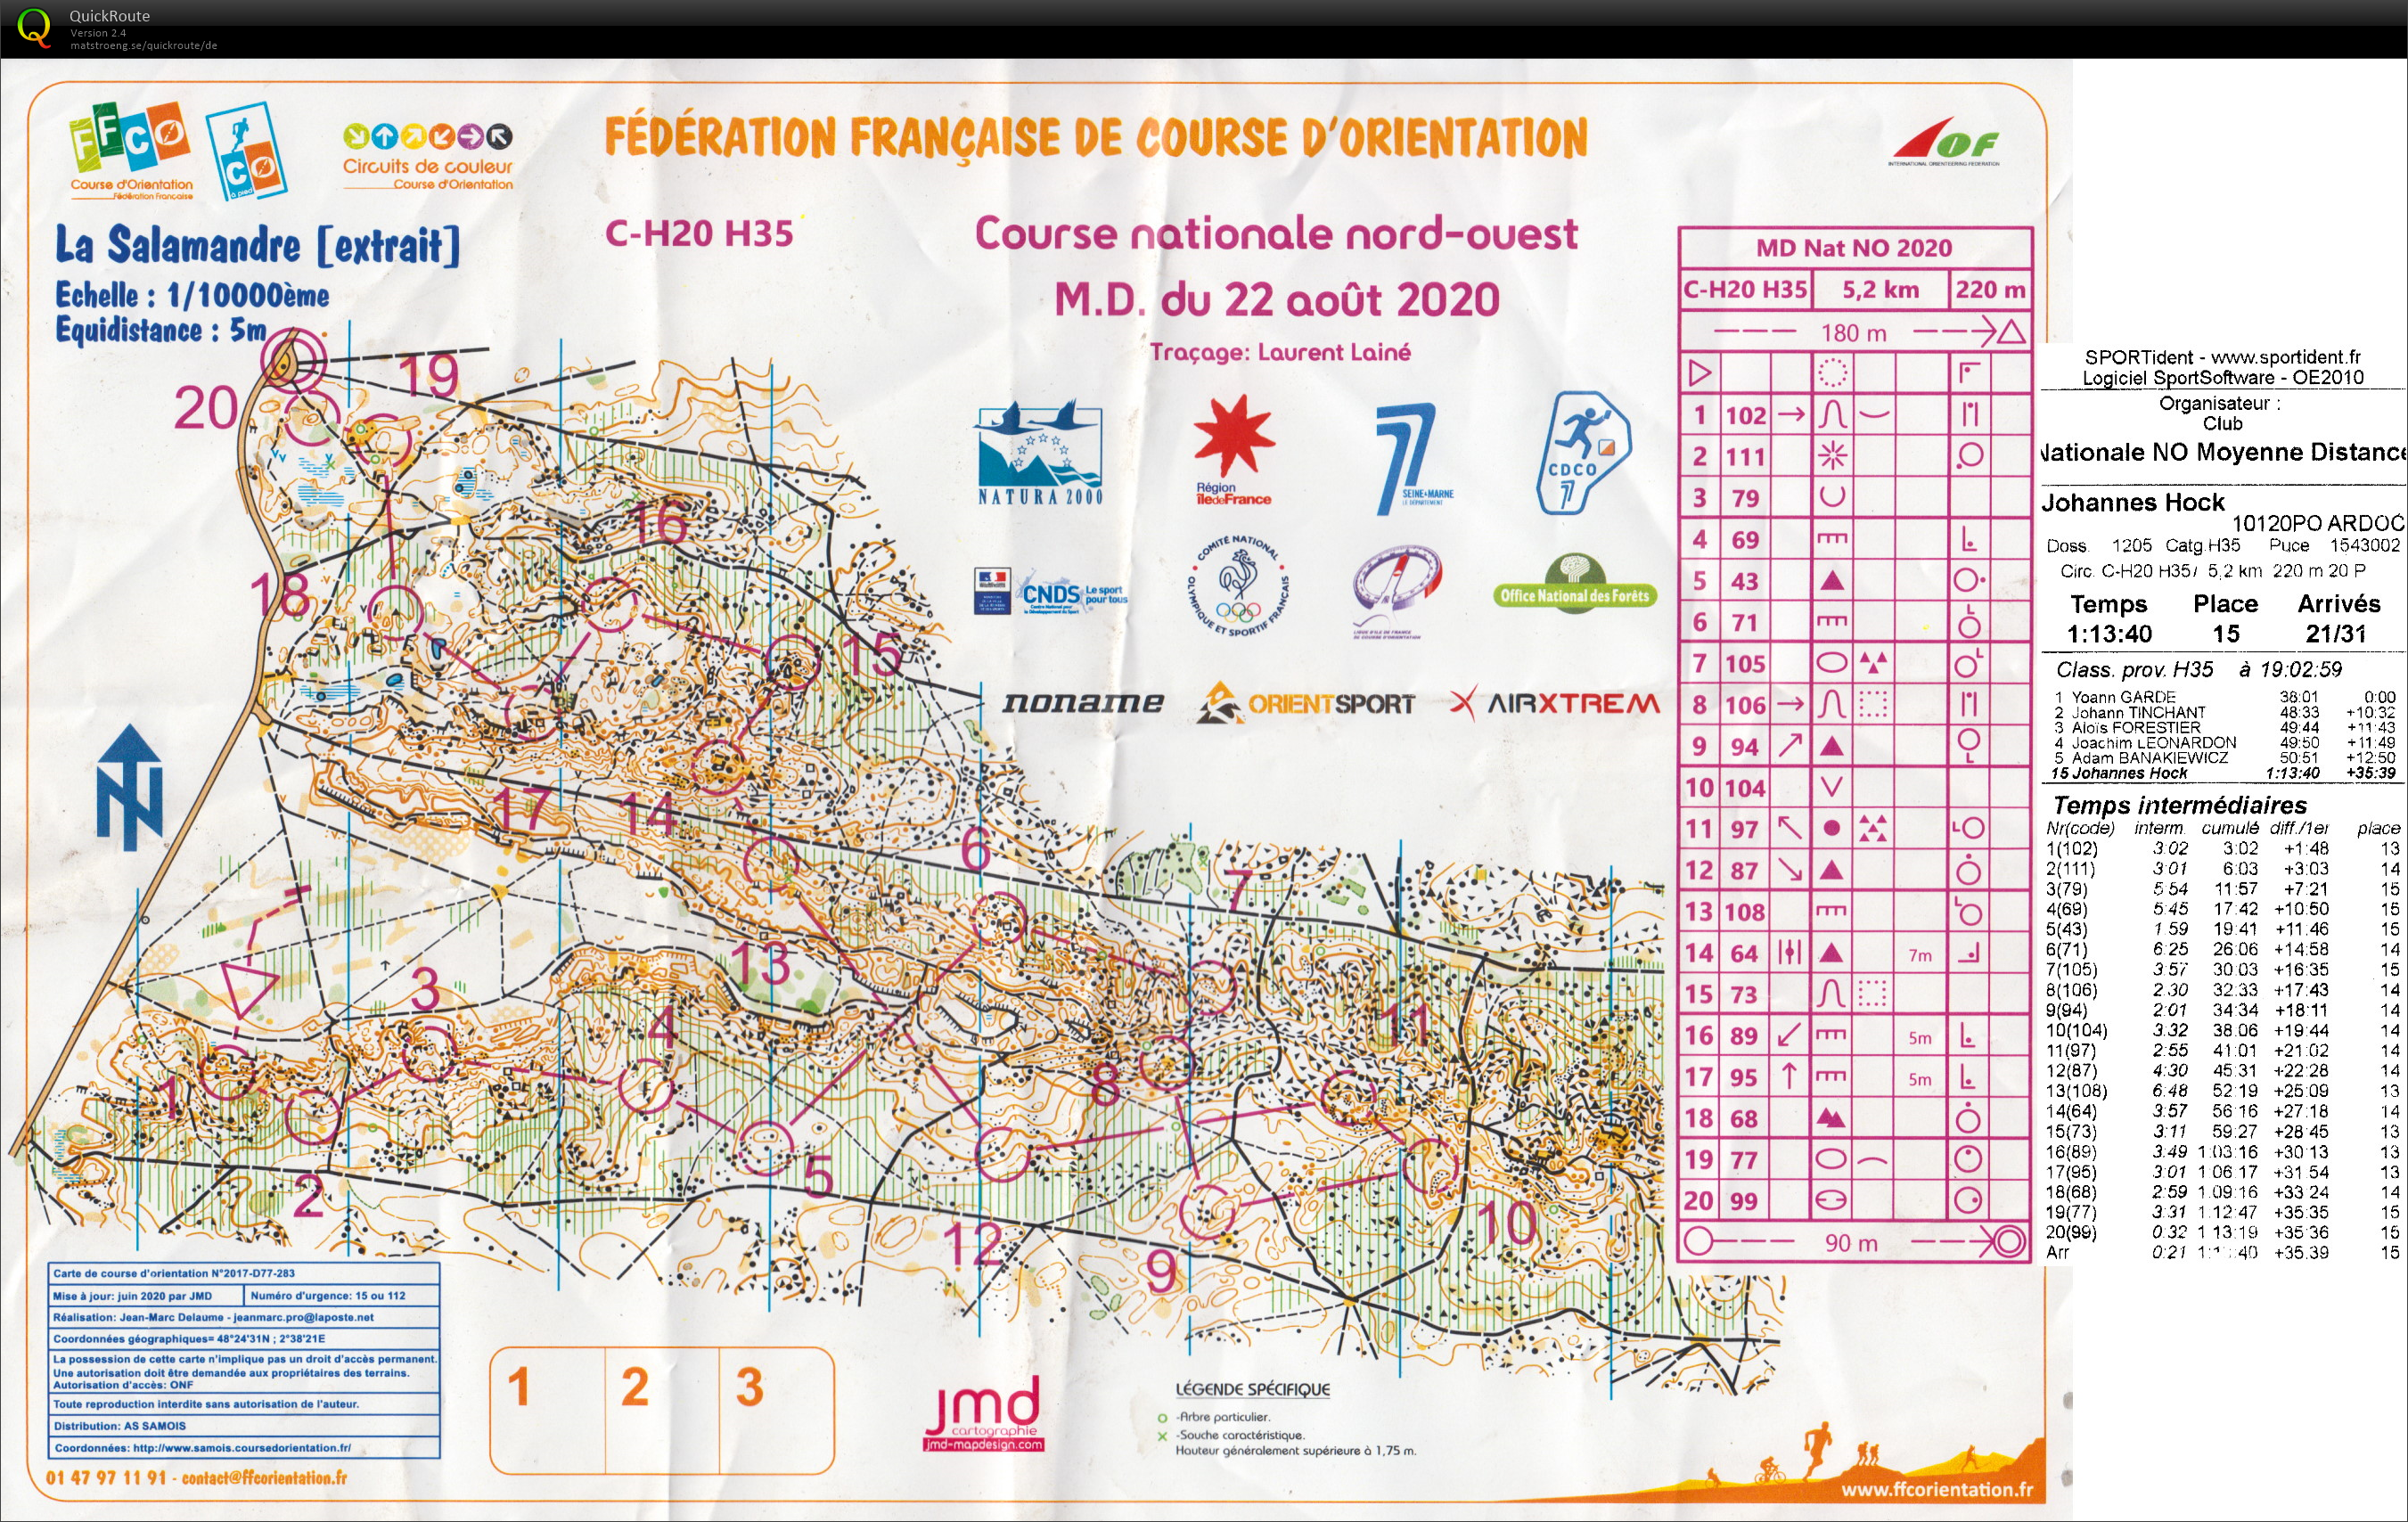 Course nationale M.D. Fontainebleau (22-08-2020)